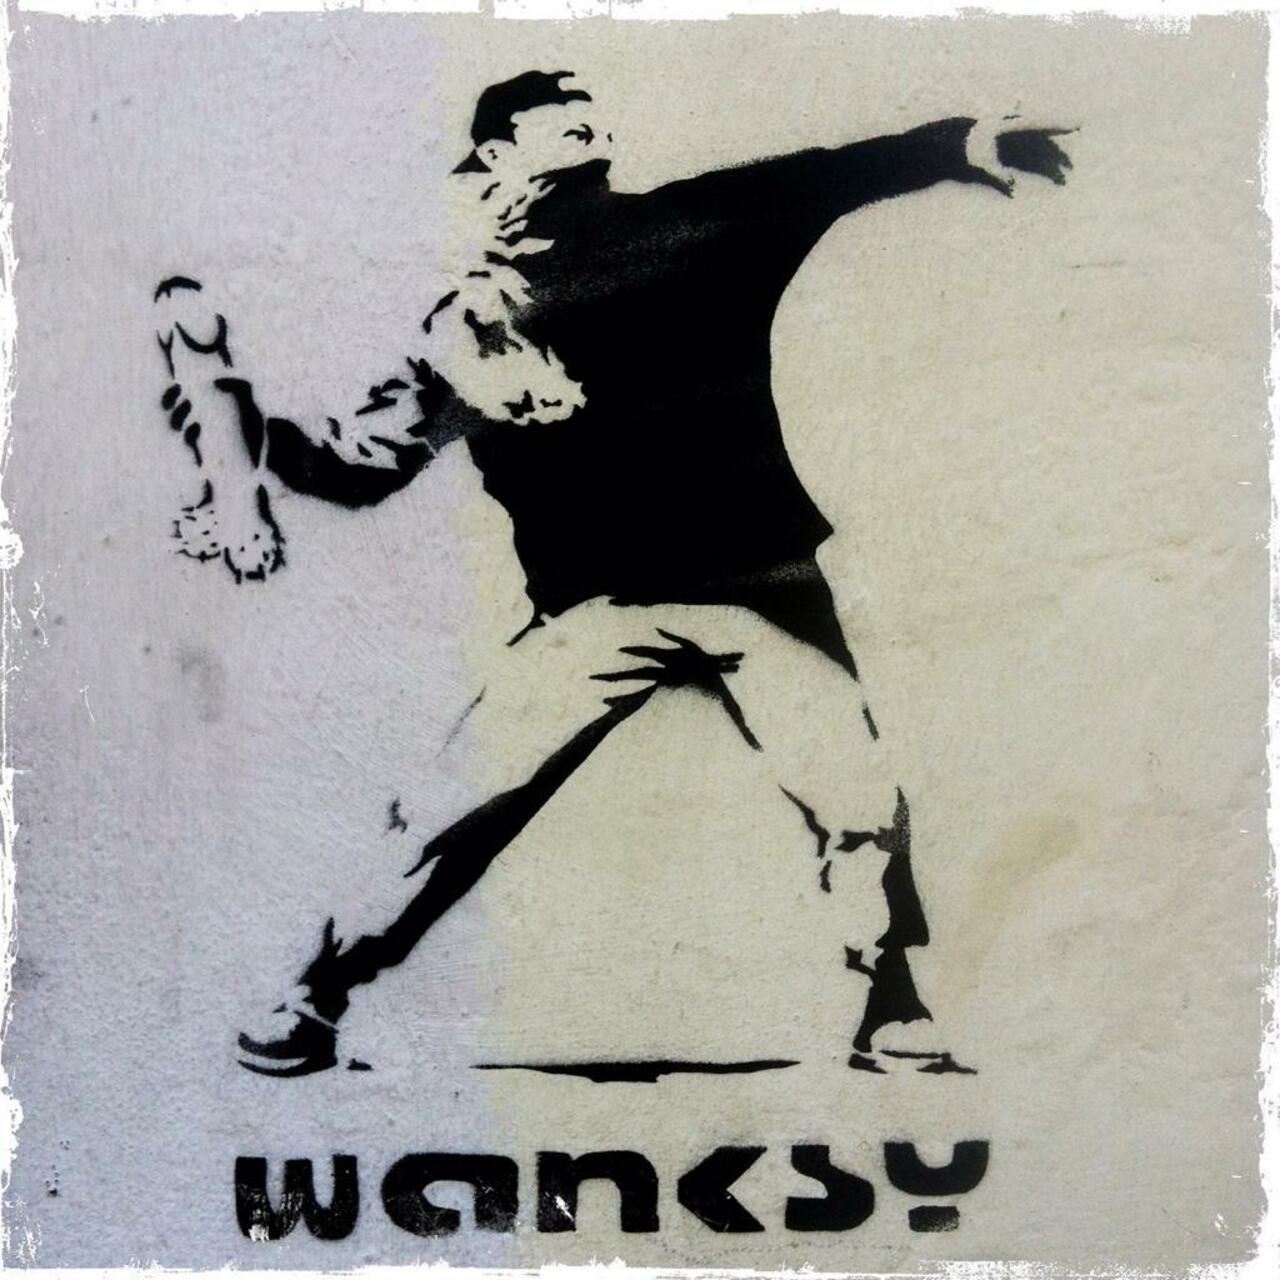 RT @BrickLaneArt: #wanksy on Hanbury Street

#art #streetart #graffiti http://t.co/mBWeHNuqia